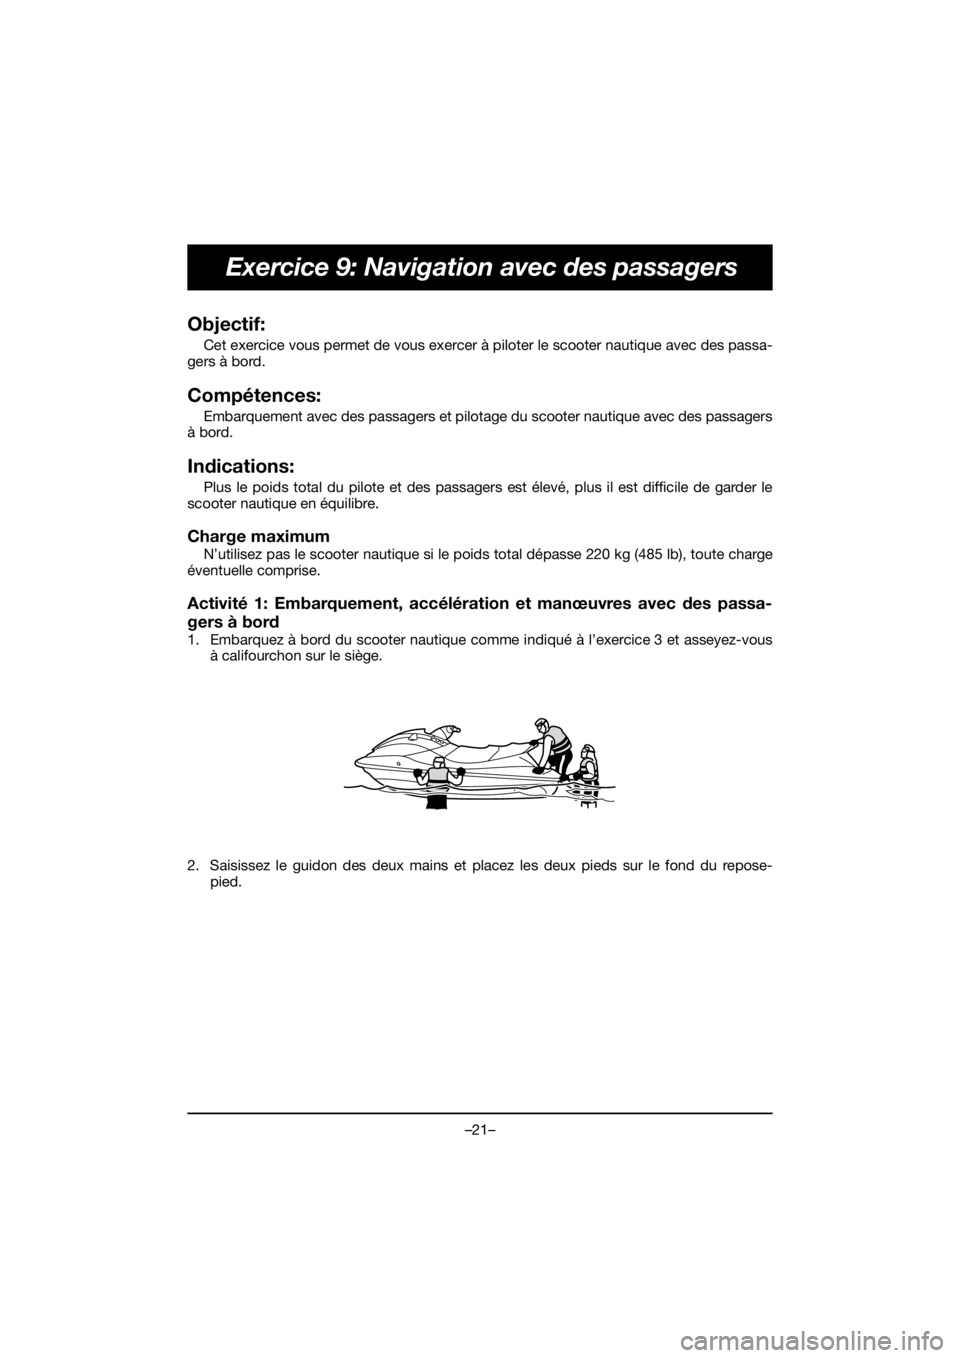 YAMAHA EX DELUXE 2019 Service Manual –21–
Exercice 9: Navigation avec des passagers
Objectif: 
Cet exercice vous permet de vous exercer à piloter le scooter nautique avec des passa-
gers à bord.
Compétences: 
Embarquement avec des